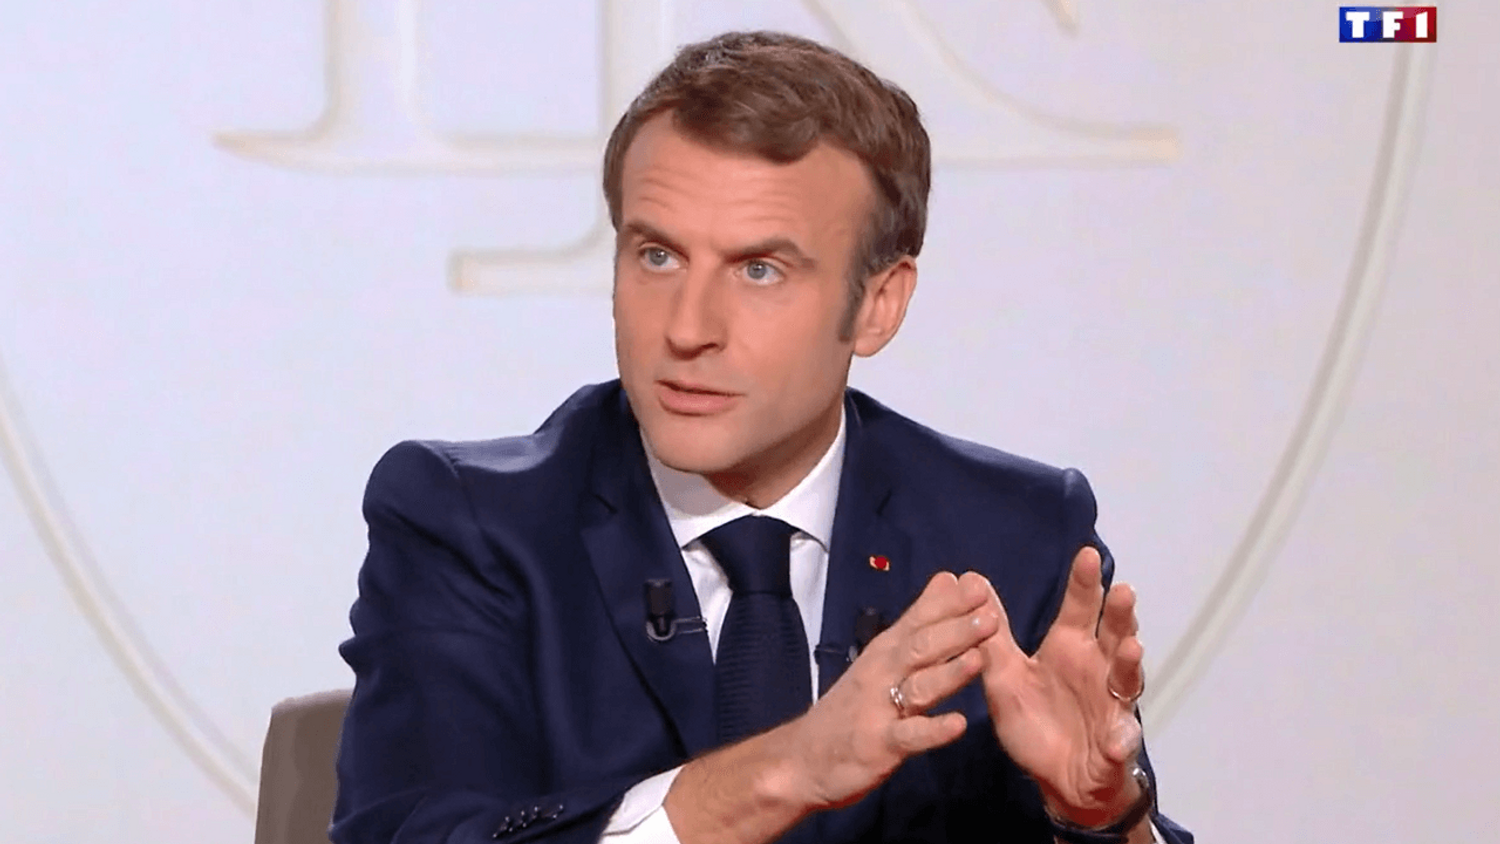 Nouveaux voeux sous Covid pour Macron à l'approche de la présidentielle